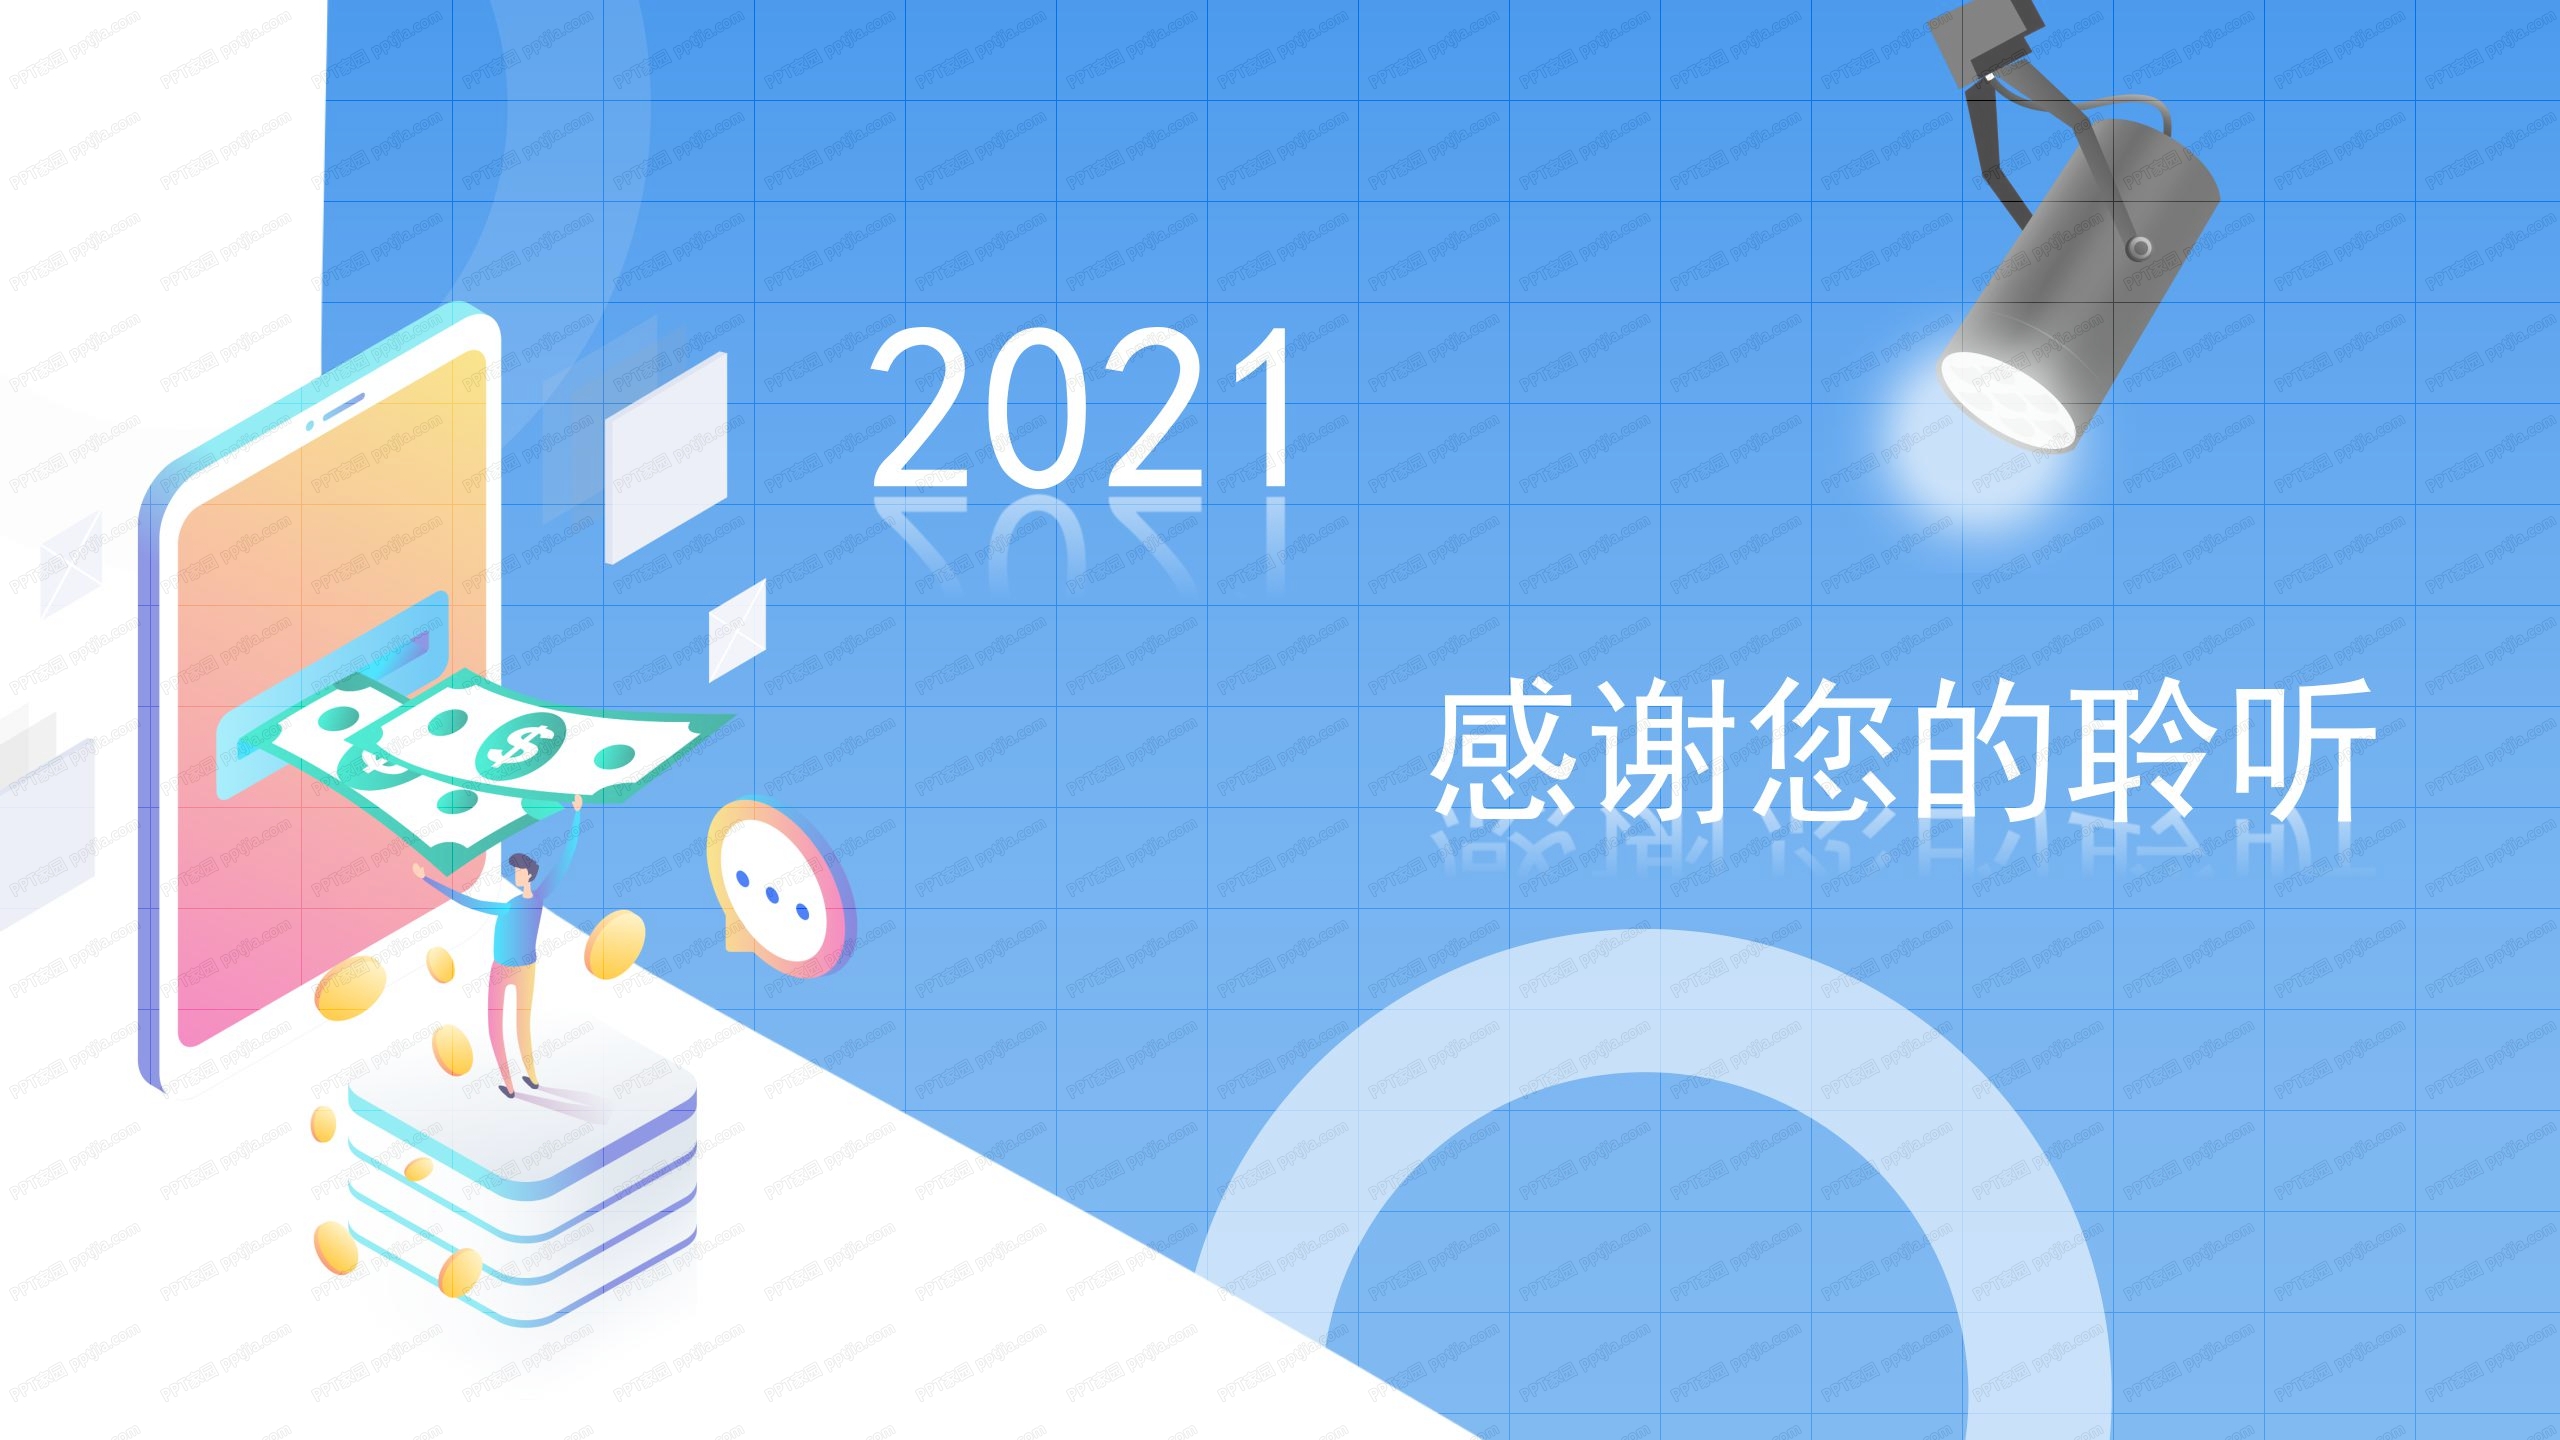 2021蓝色商务企业凝心聚力共创佳绩通用ppt模板